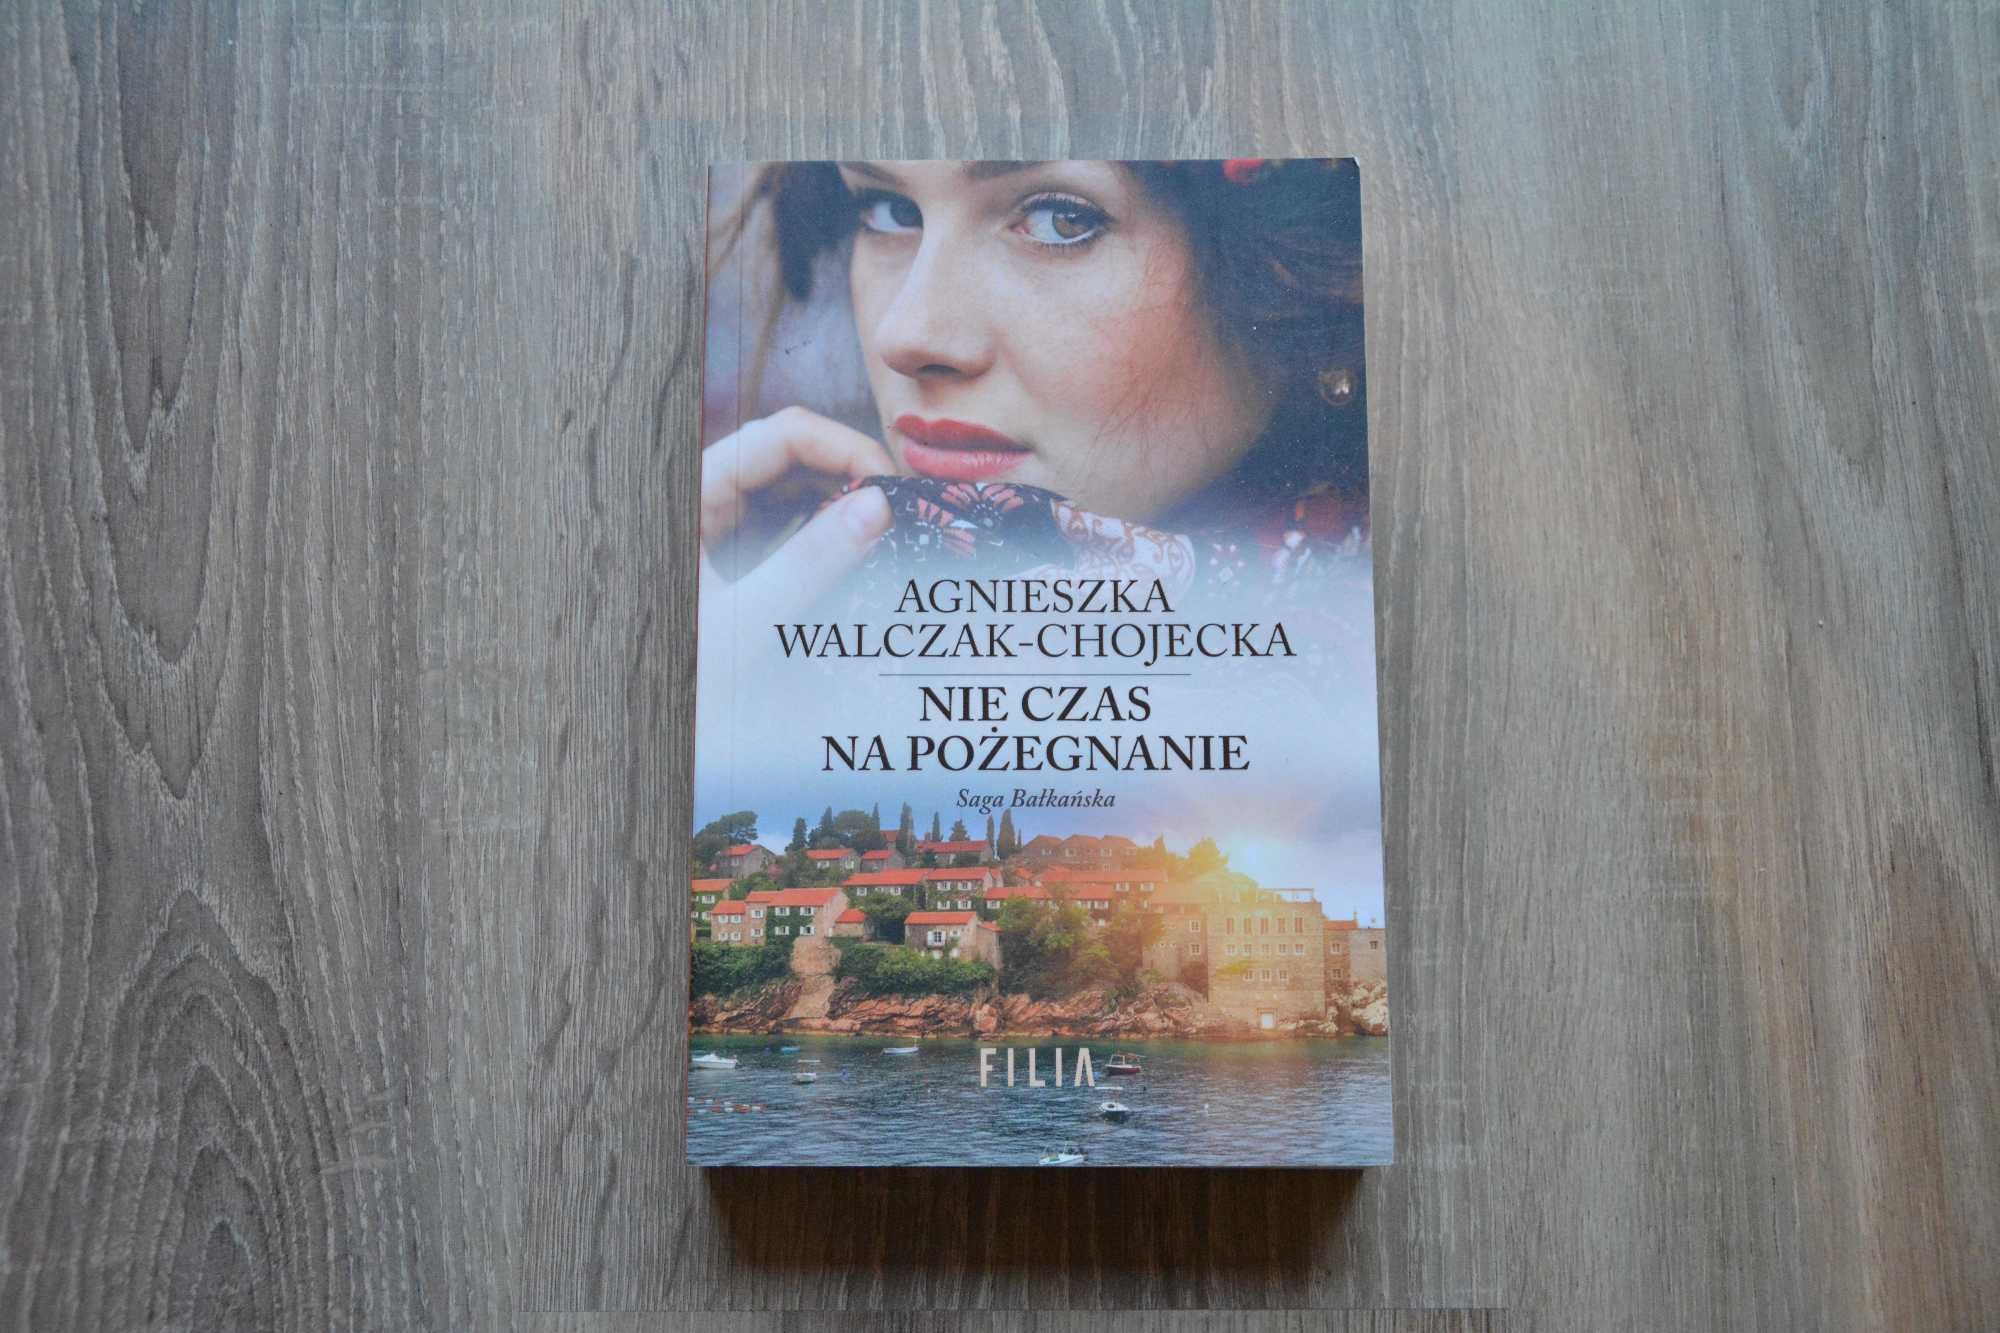 Nie czas na pożegnanie
Agnieszka Walczak-Chojecka